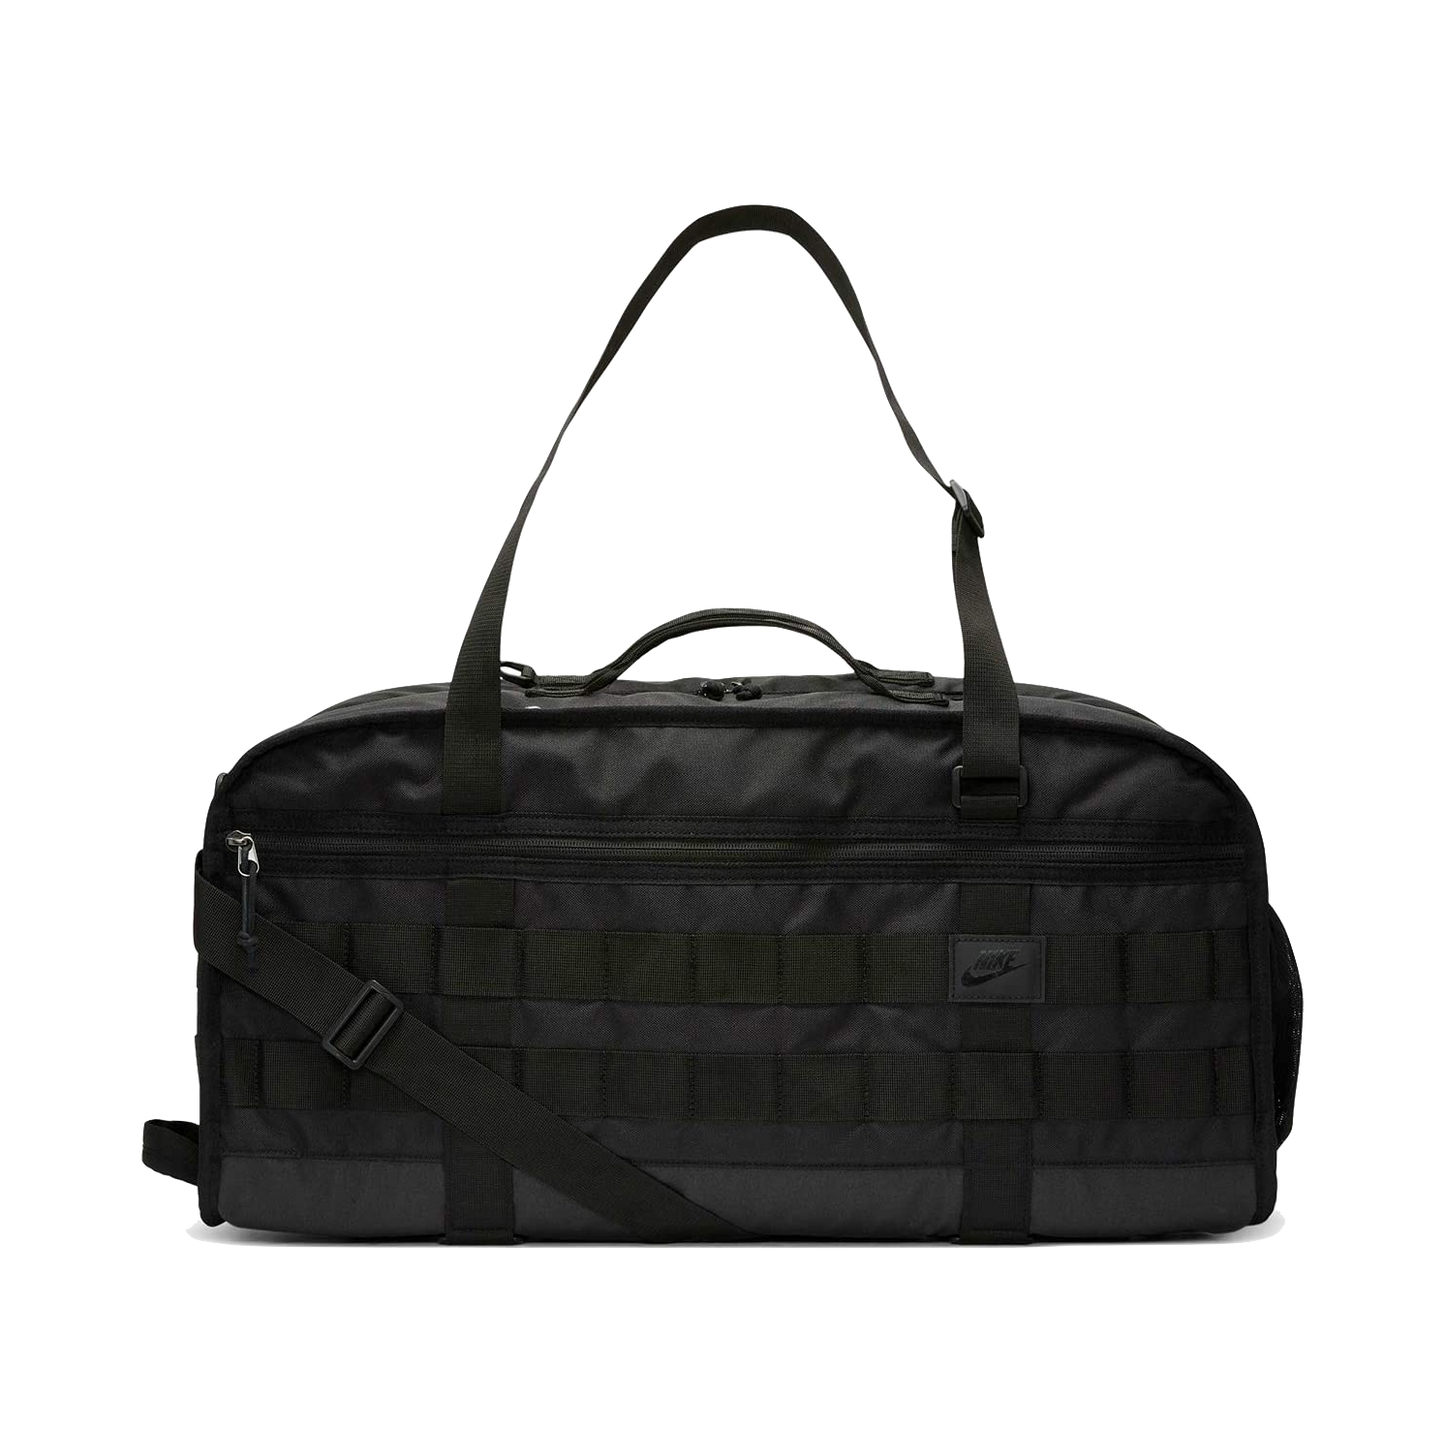 Nike SB RPM bag Duffle black